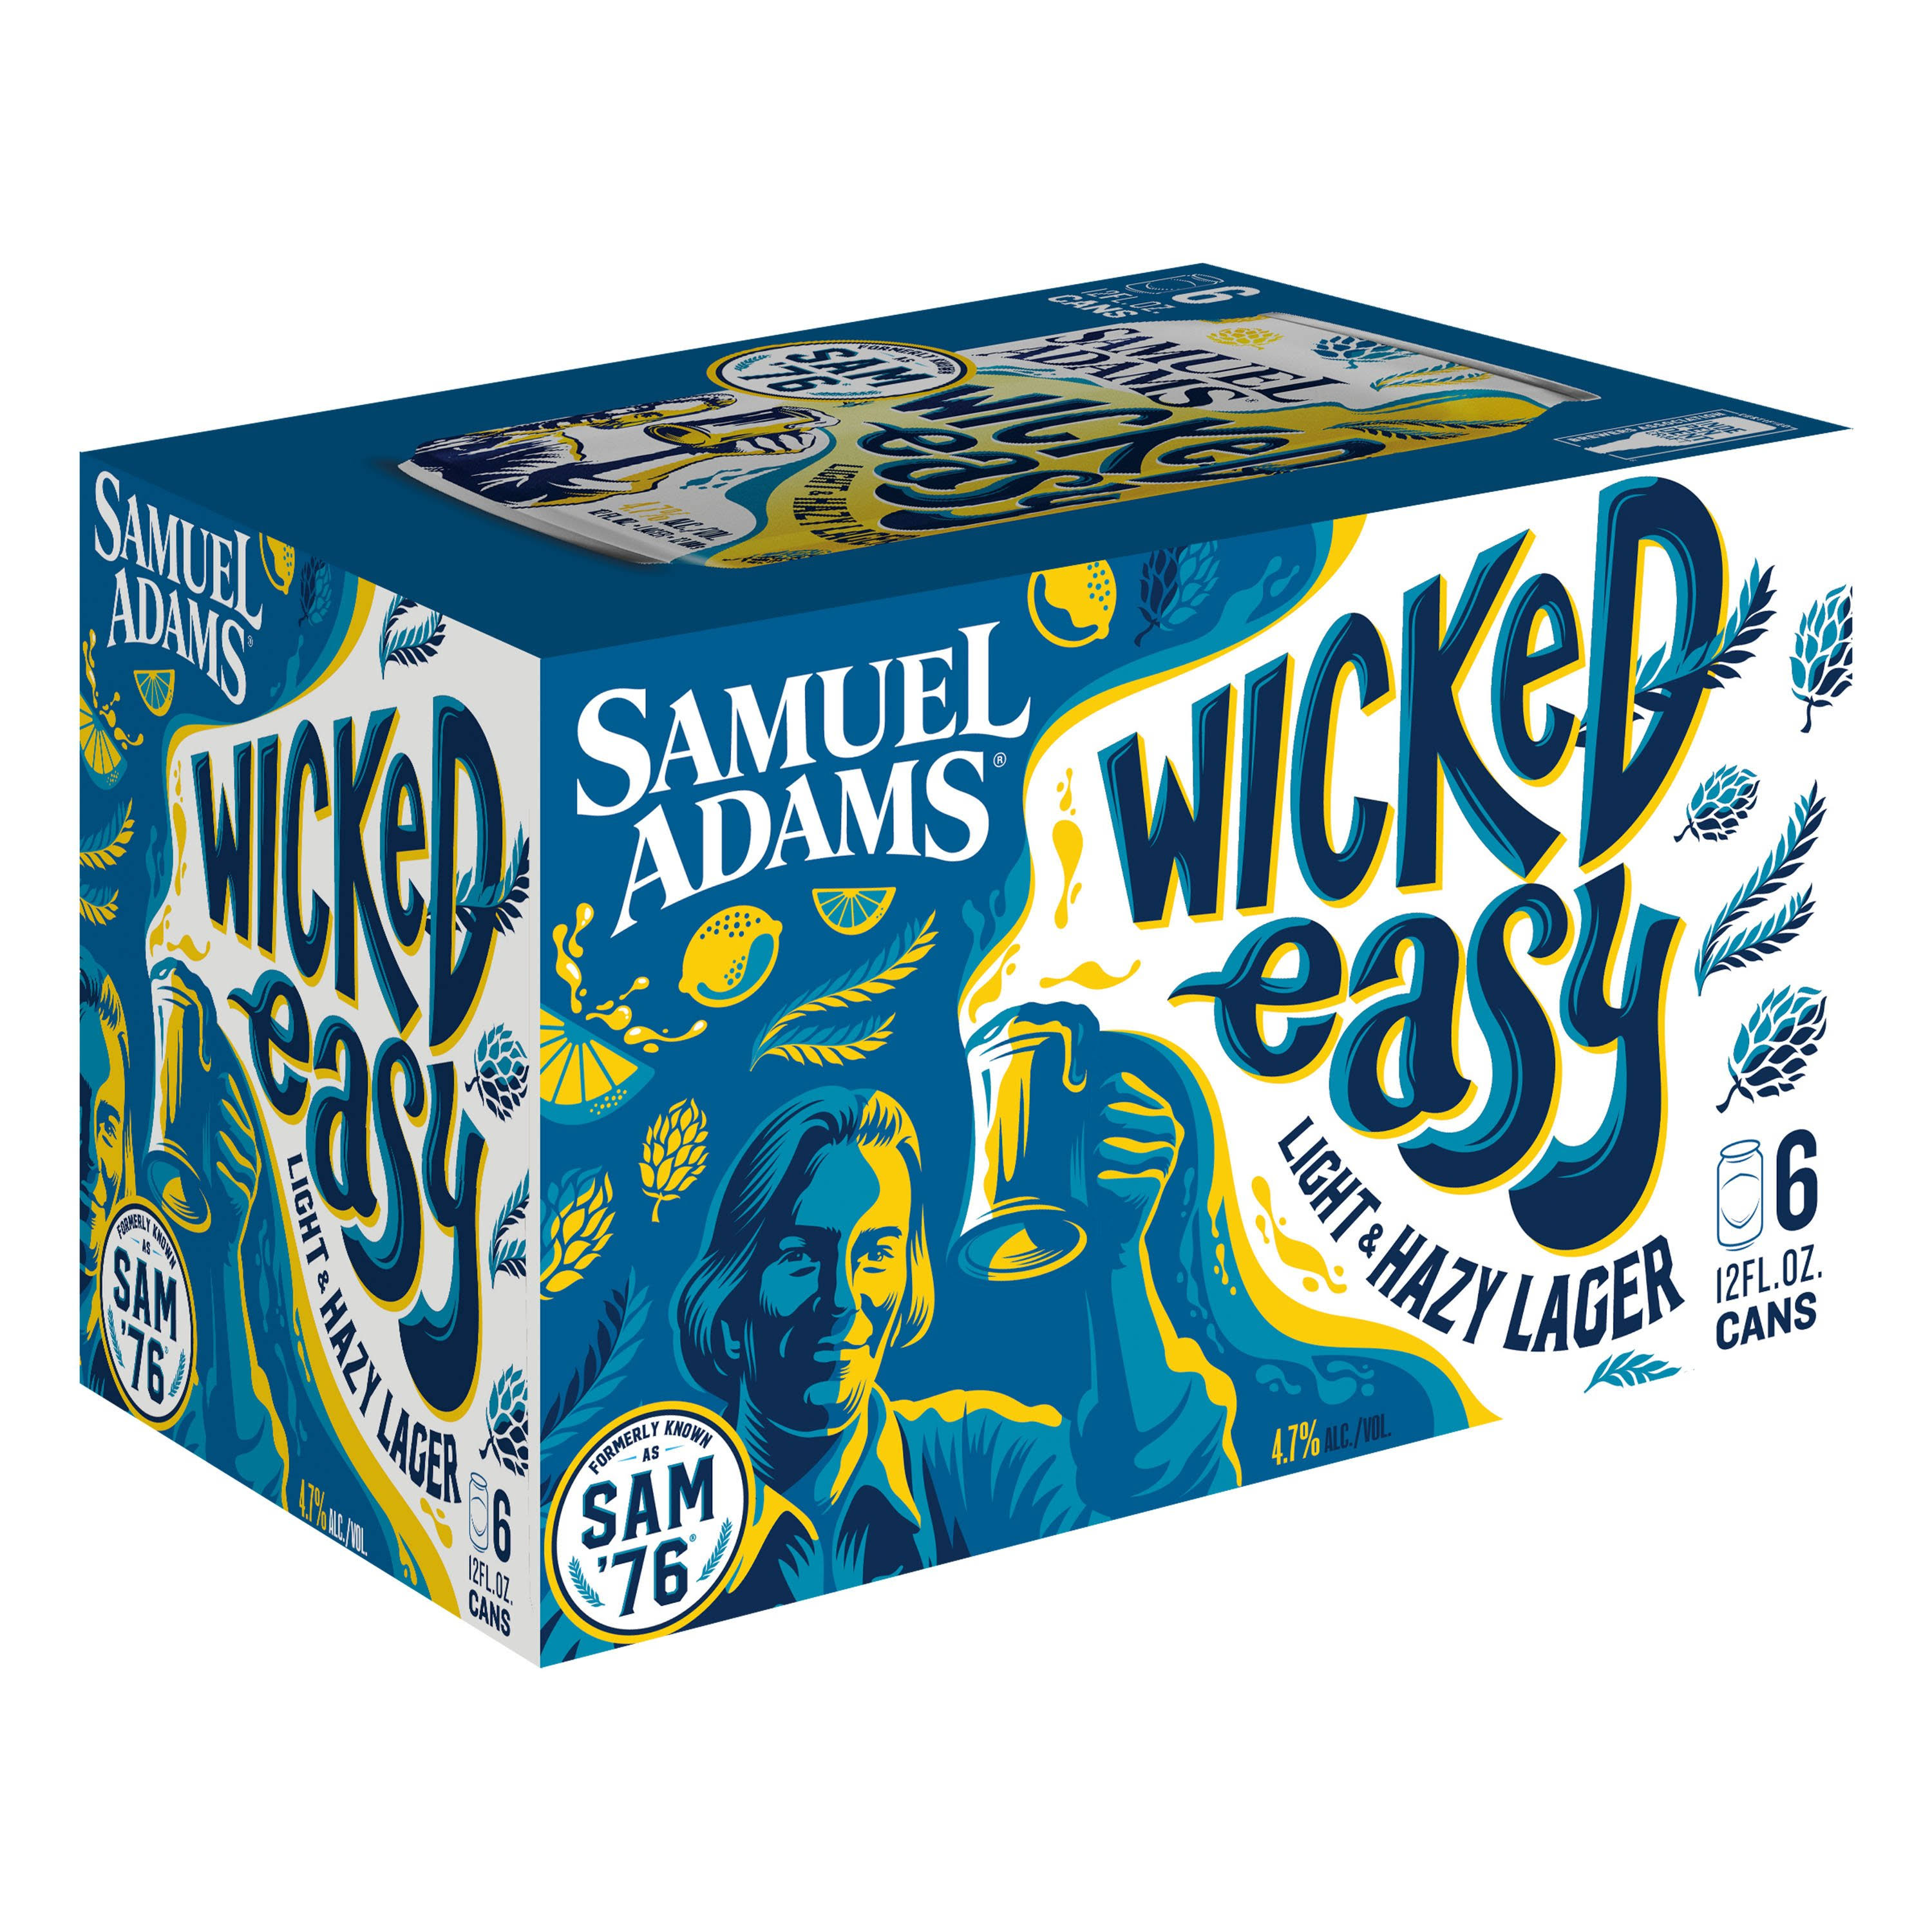 Samuel Adams Beer, Lager, Sam '76 - 6 pack, 12 fl oz cans